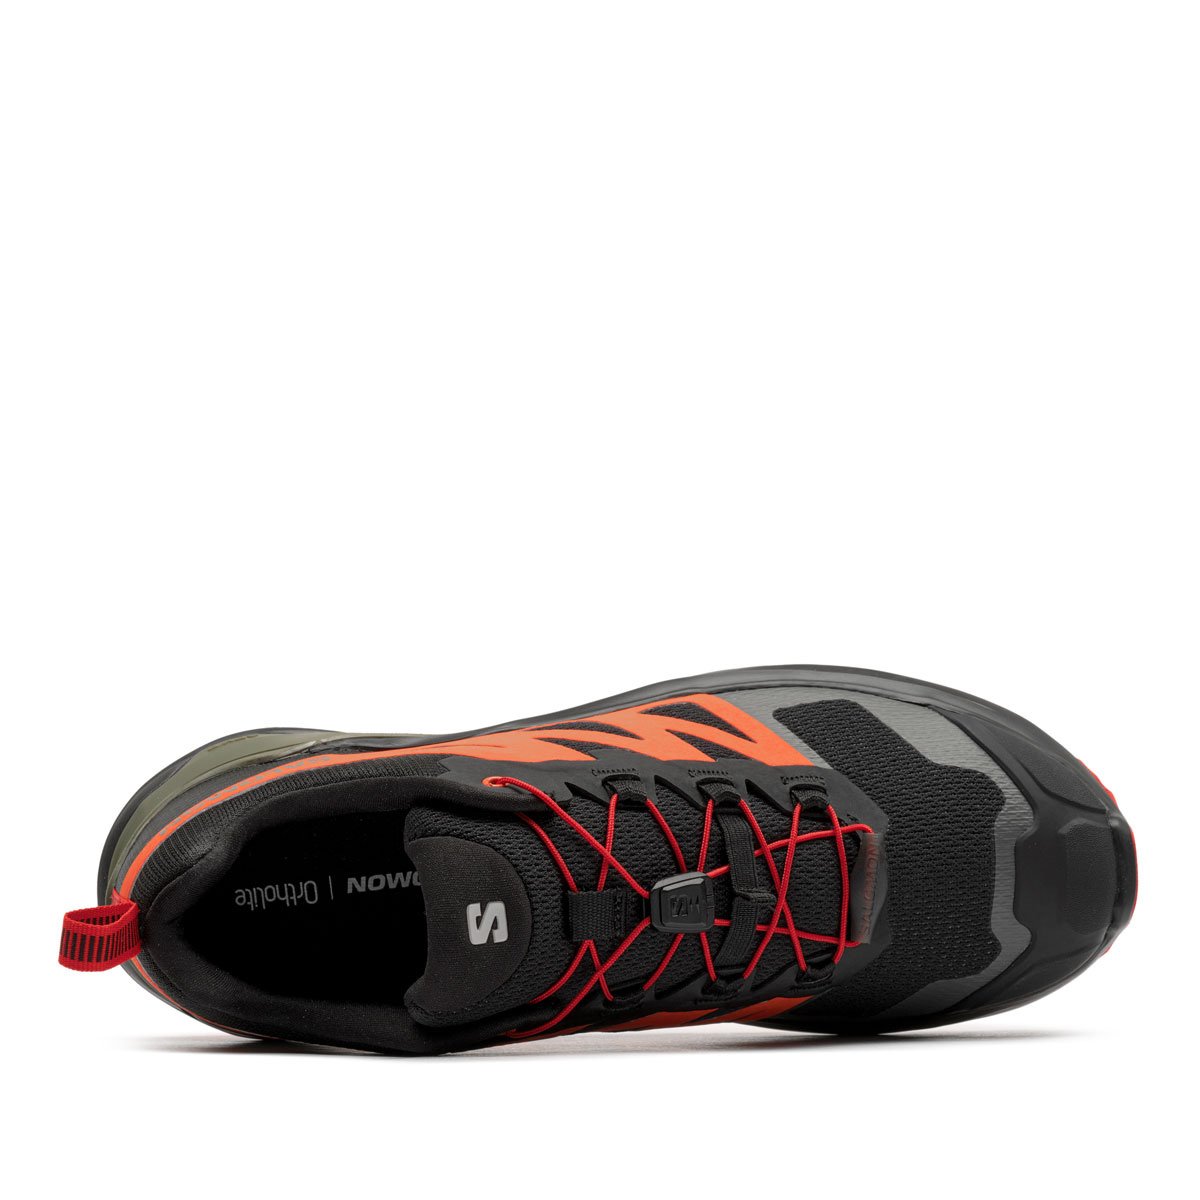 Salomon X-Adventure Мъжки спортни обувки 473207